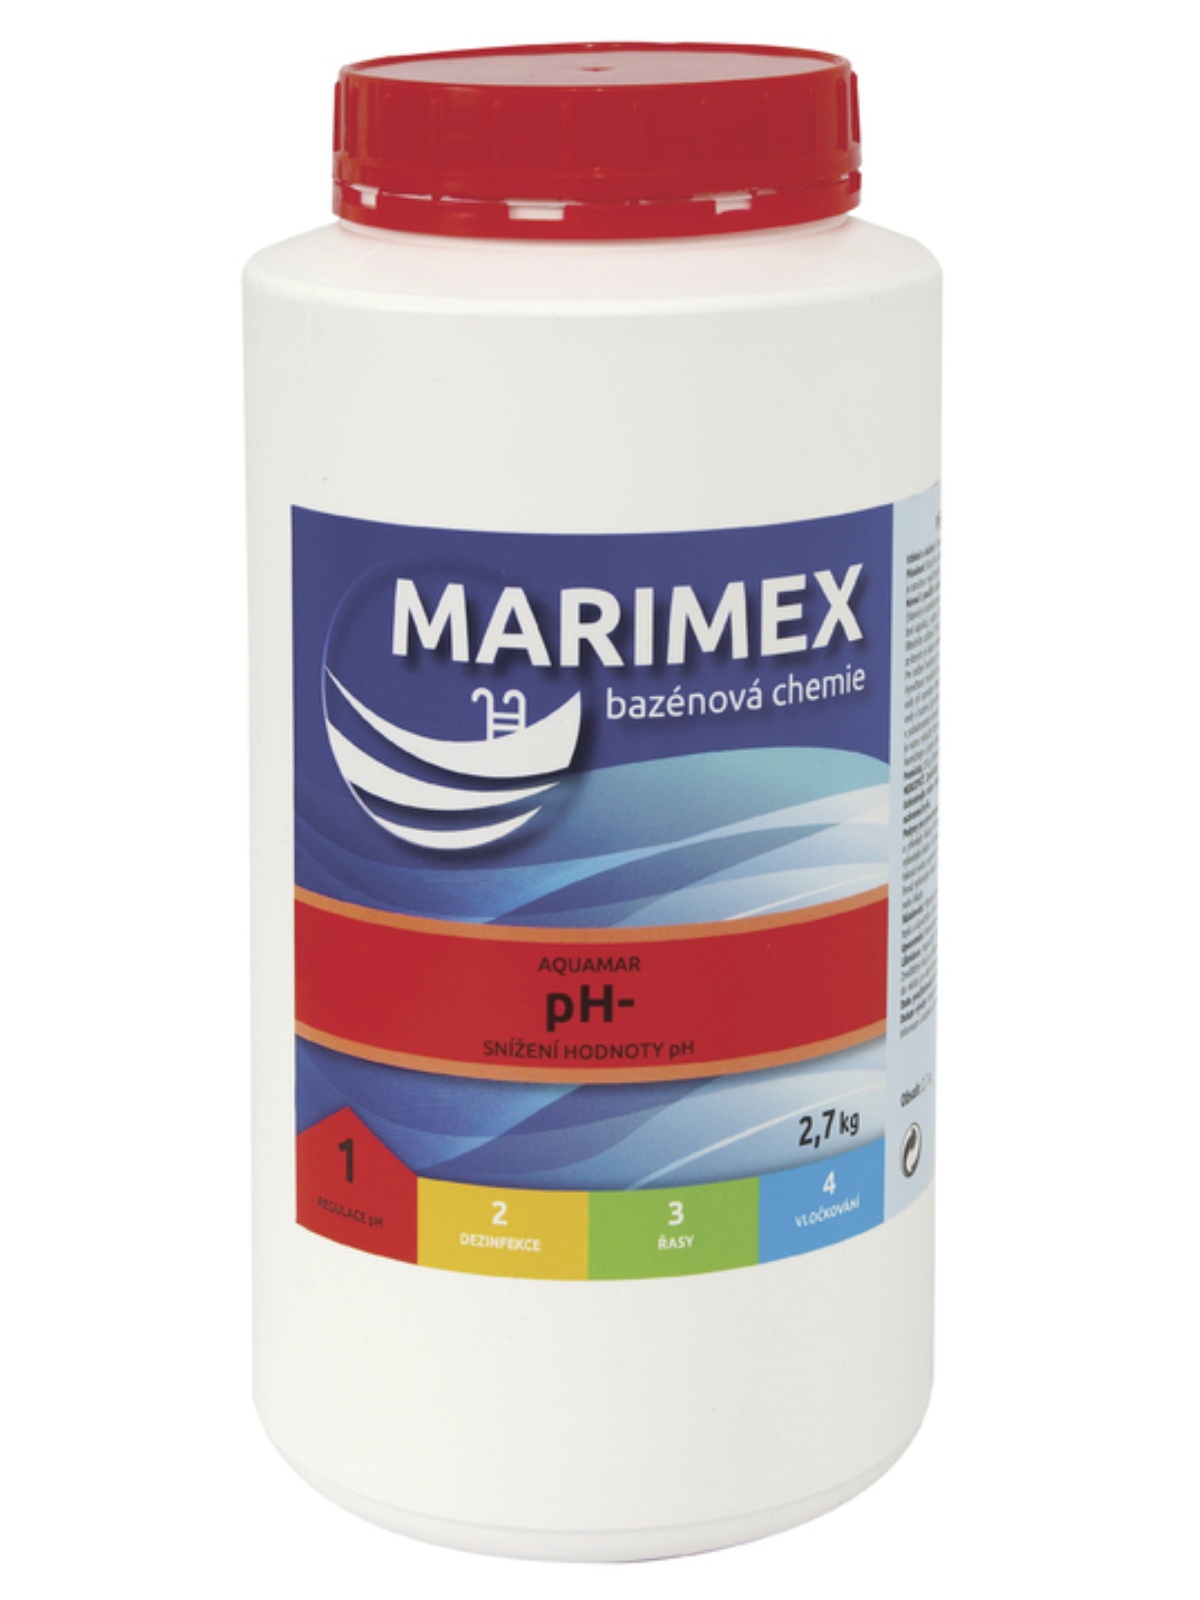 Bazénová chemie MARIMEX pH- 2,7 kg